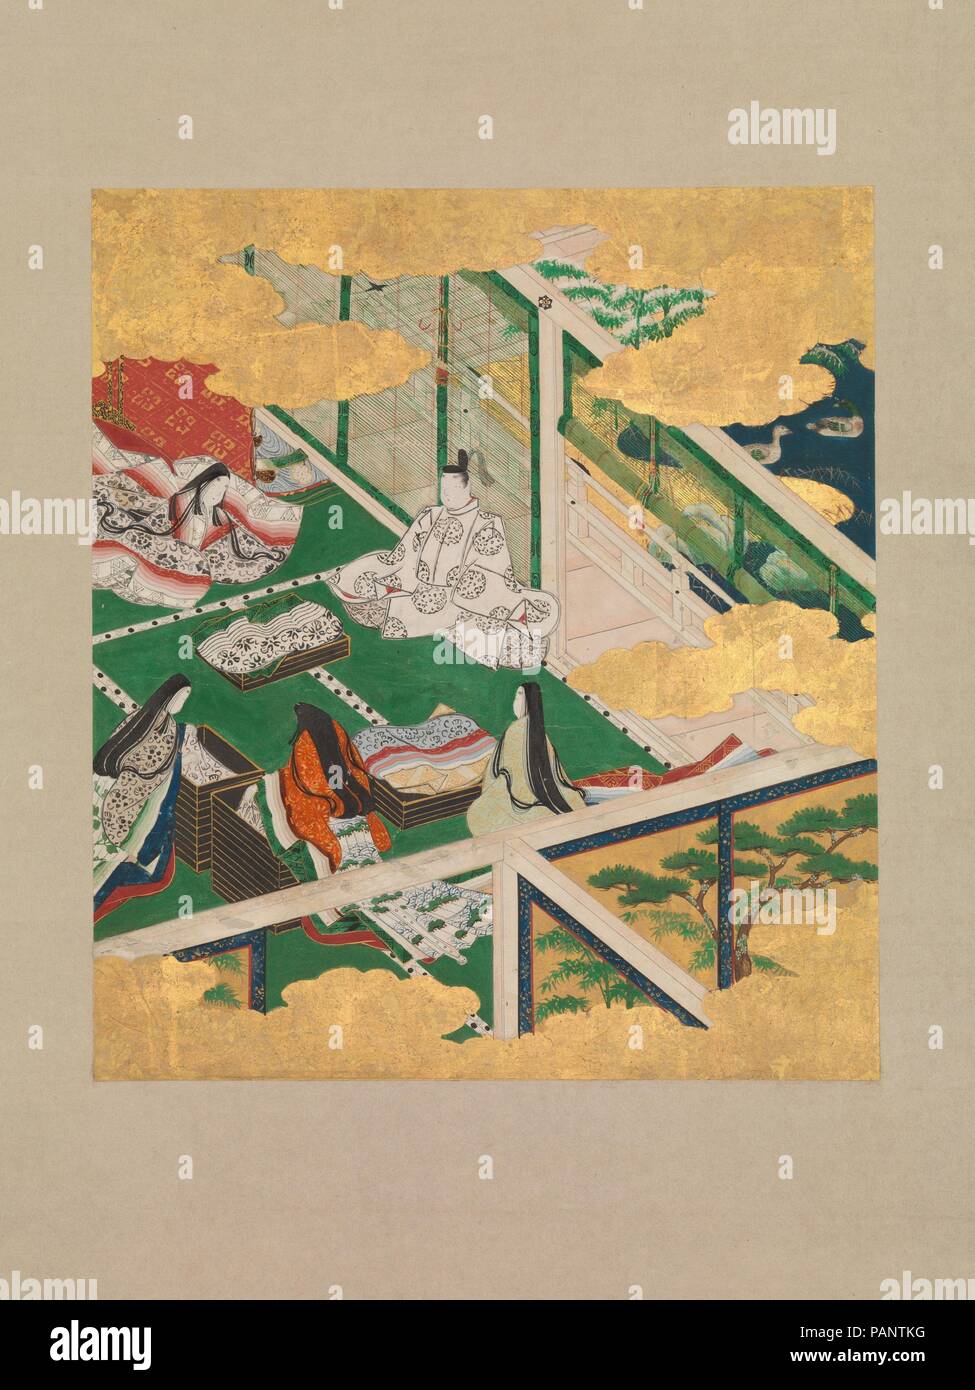 'La Jeweled coroncina' ('Tamakazura'), dal racconto di Genji (Genji monogatari). Artista: Cerchio di Tosa Mitsuyoshi (giapponese, 1539-1613). Cultura: il Giappone. Dimensioni immagine: (a): 9 5/8 x 8 3/8 in. (24,4 × 21,3 cm) complessivamente con il supporto di montaggio (a): 53 1/4 × 15 11/16 in. (135.3 × 39,8 cm) in generale con le manopole (A): 53 1/4 × 17 3/8 in. (135.3 × 44,2 cm) immagine (b): 9 7/16 x 8 3/8 in. (24 × 21,2 cm) complessivamente con il supporto di montaggio (B): 53 1/8 × 15 5/8 in. (135 × 39,7 cm) in generale con le manopole (B): 53 1/8 × 17 3/8 in. (135 × 44,1 cm). Data: inizio del XVII secolo. In questa scena da un album del XI secolo romanzo, Foto Stock